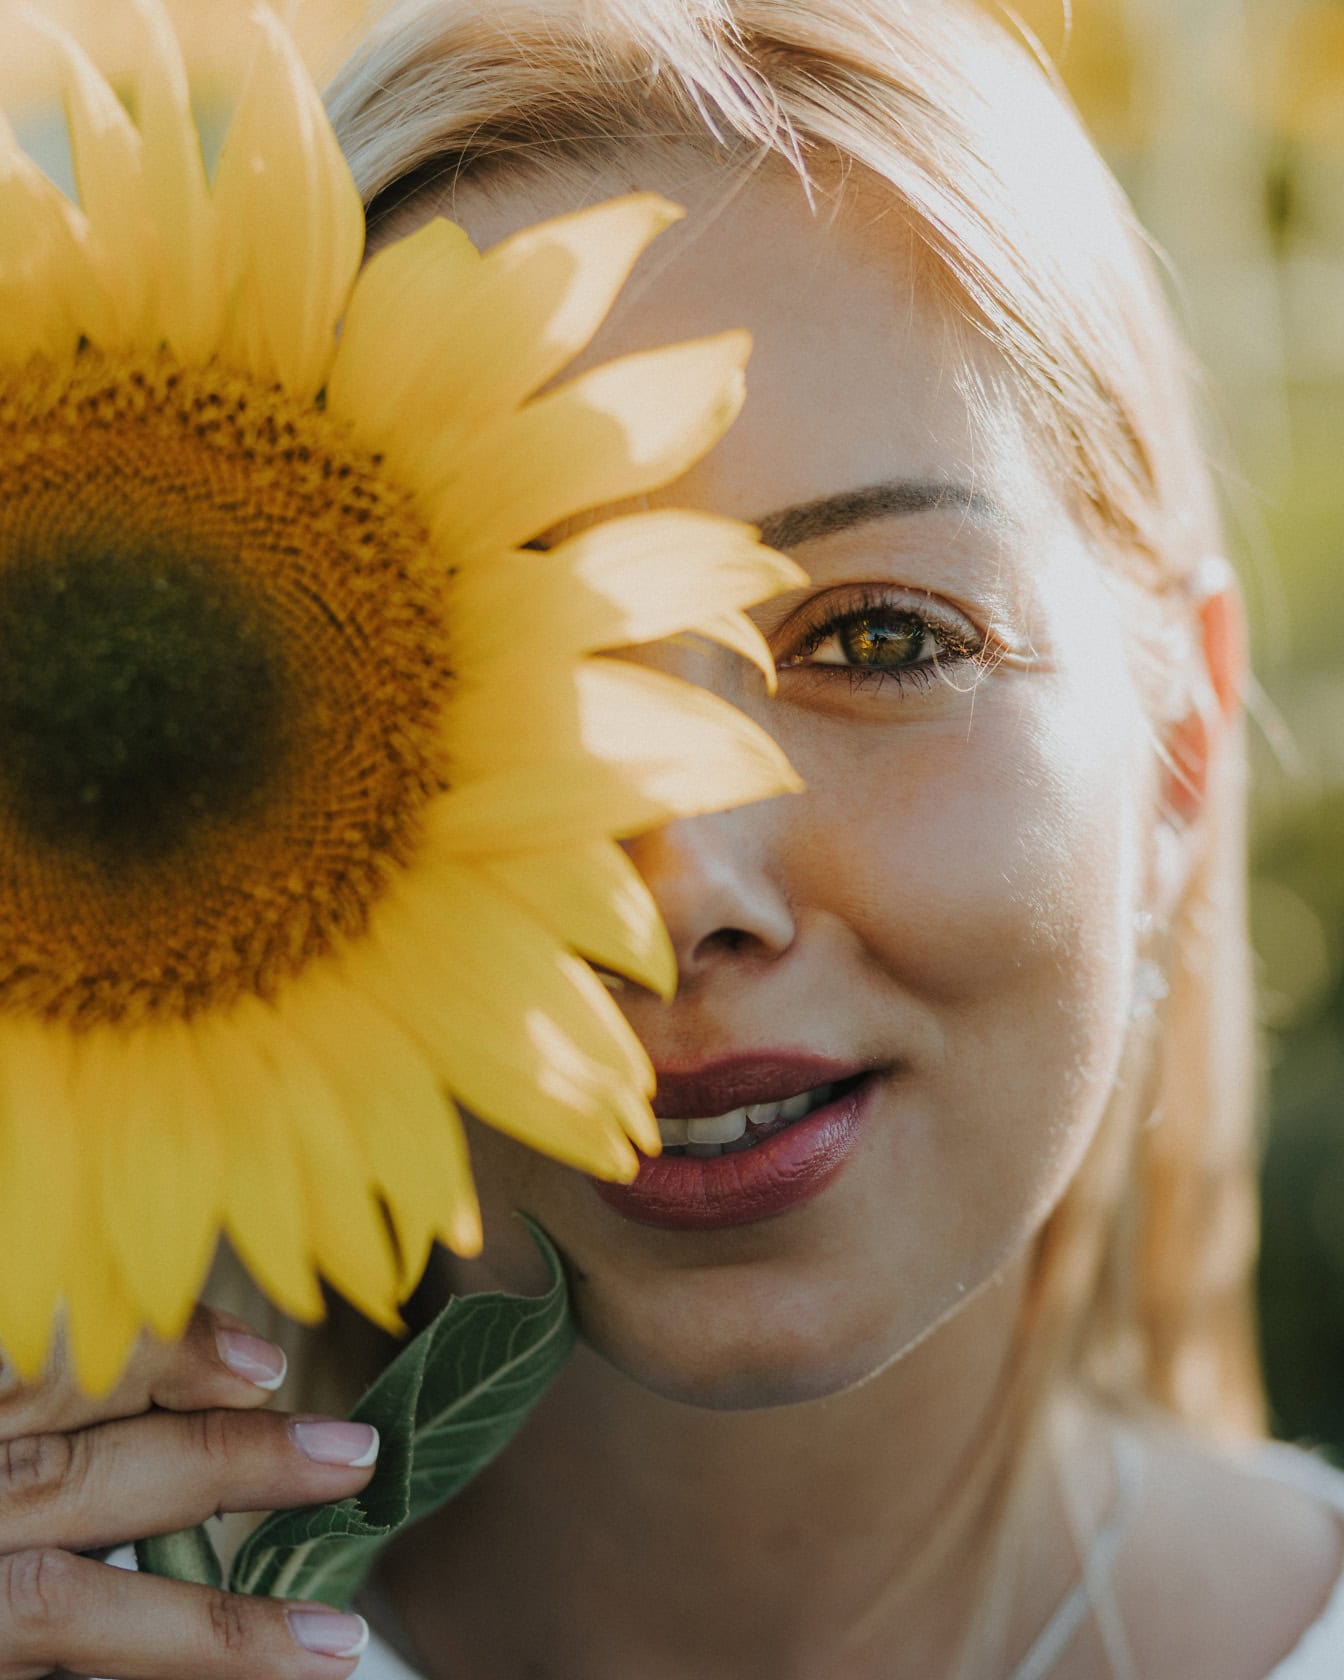 Chân dung khuôn mặt của một người phụ nữ xinh đẹp cầm một bông hoa hướng dương hơn một nửa khuôn mặt